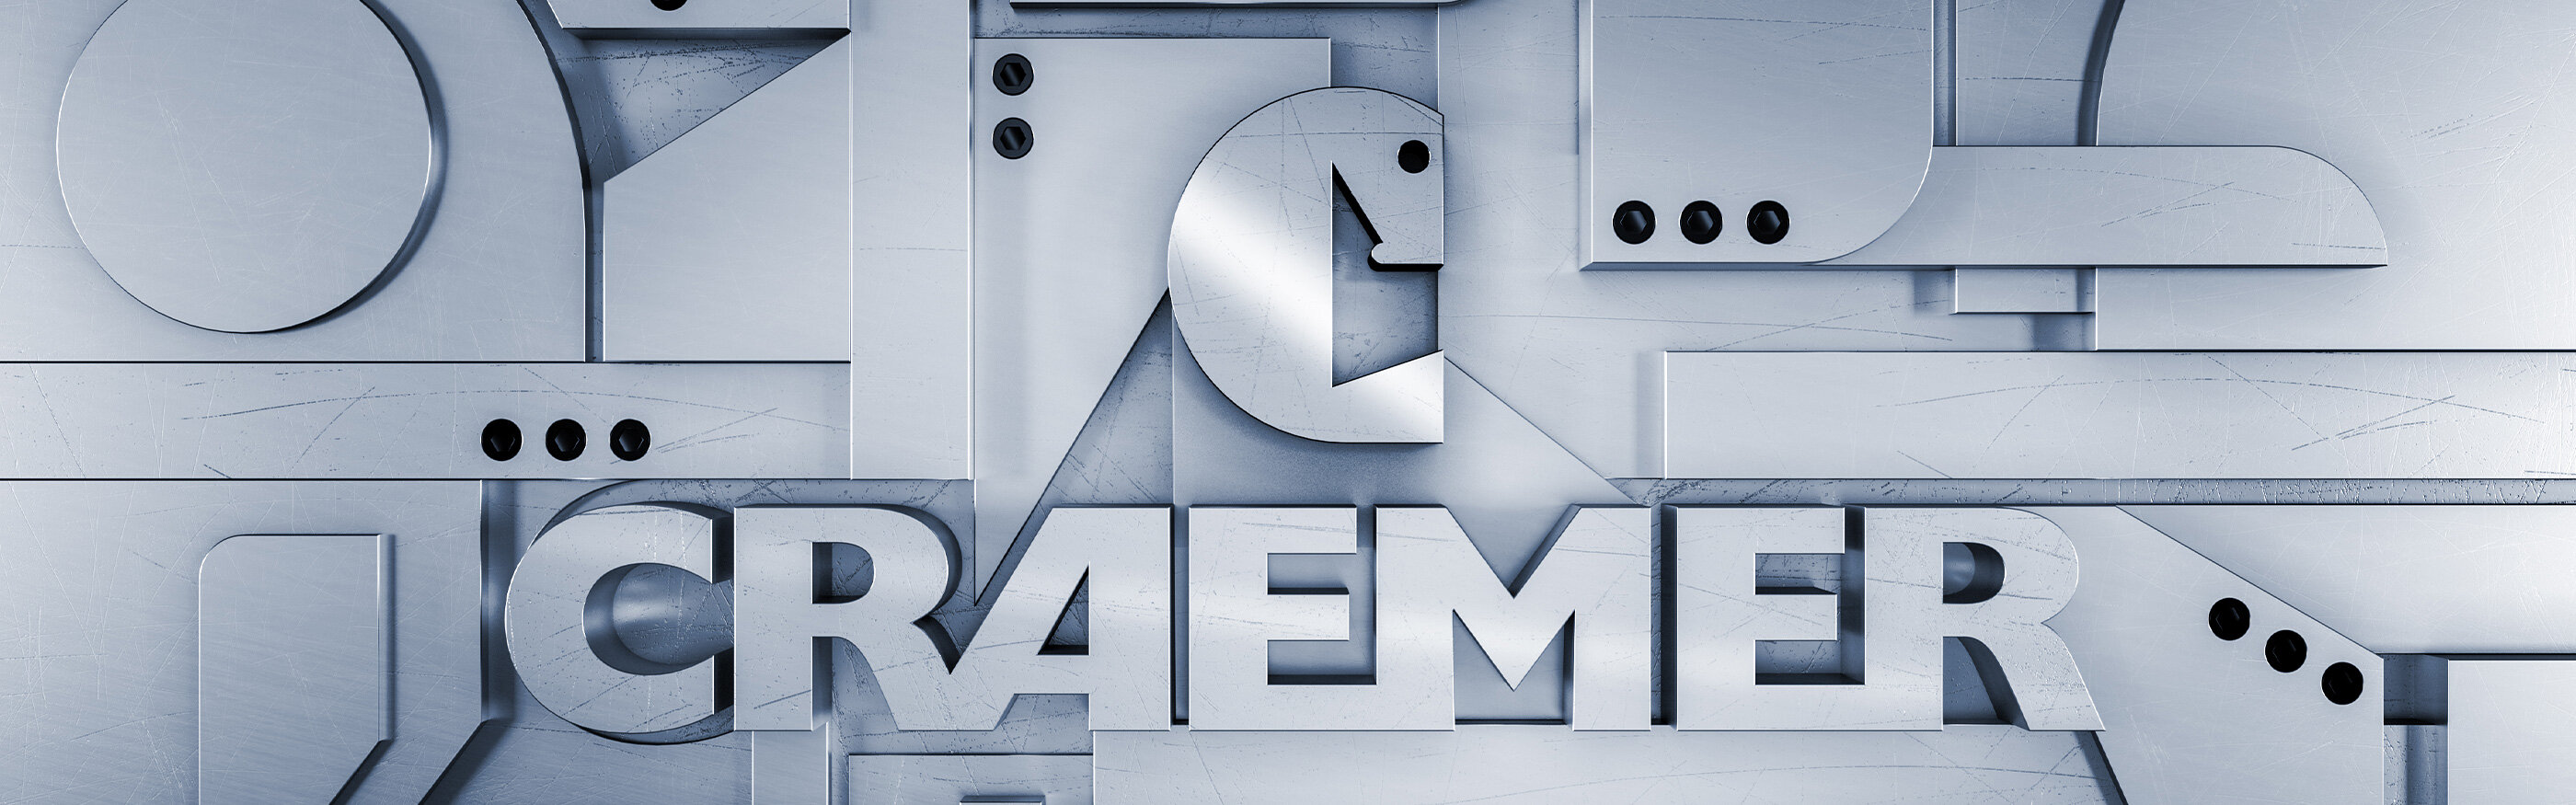 Craemer Logo im Metalldesign